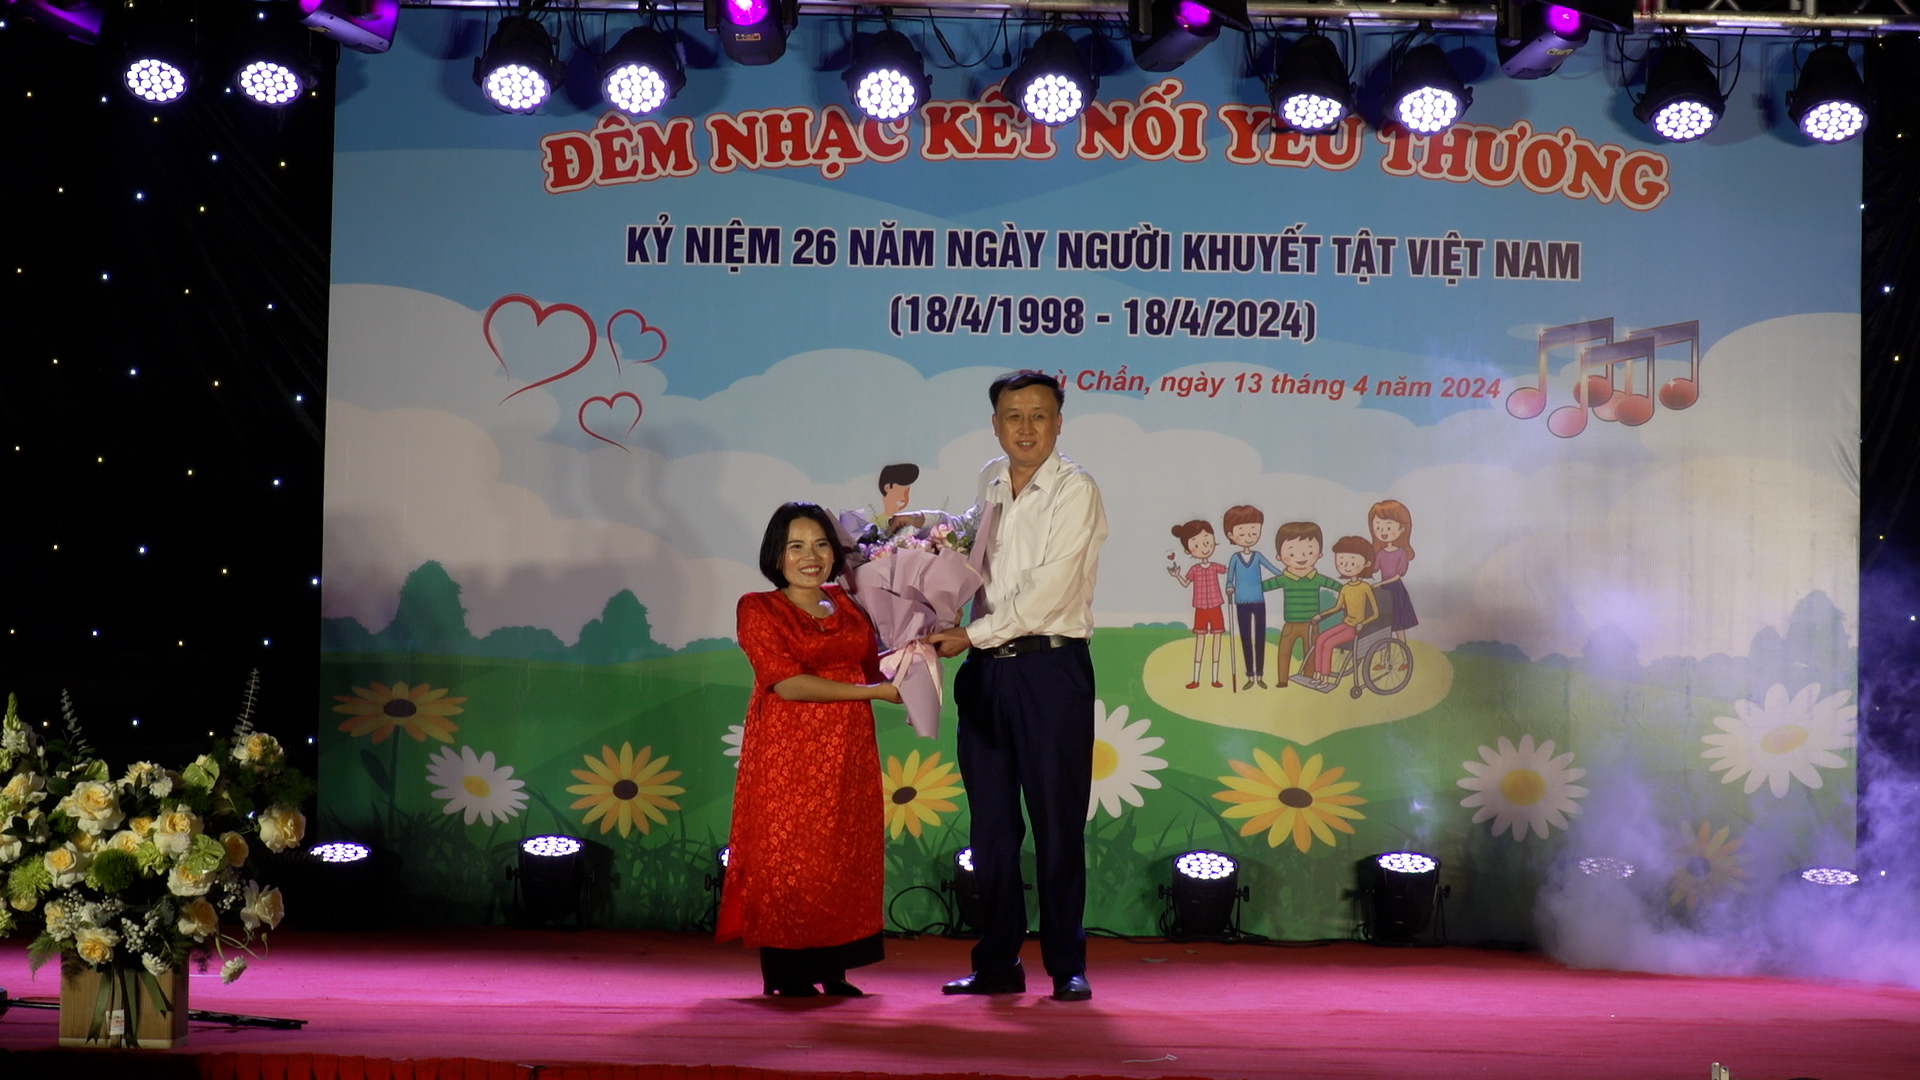 CLB khuyết tật tỉnh Bắc Ninh tổ chức giao lưu văn nghệ nhân kỷ niệm ngày người khuyết tật Việt Nam